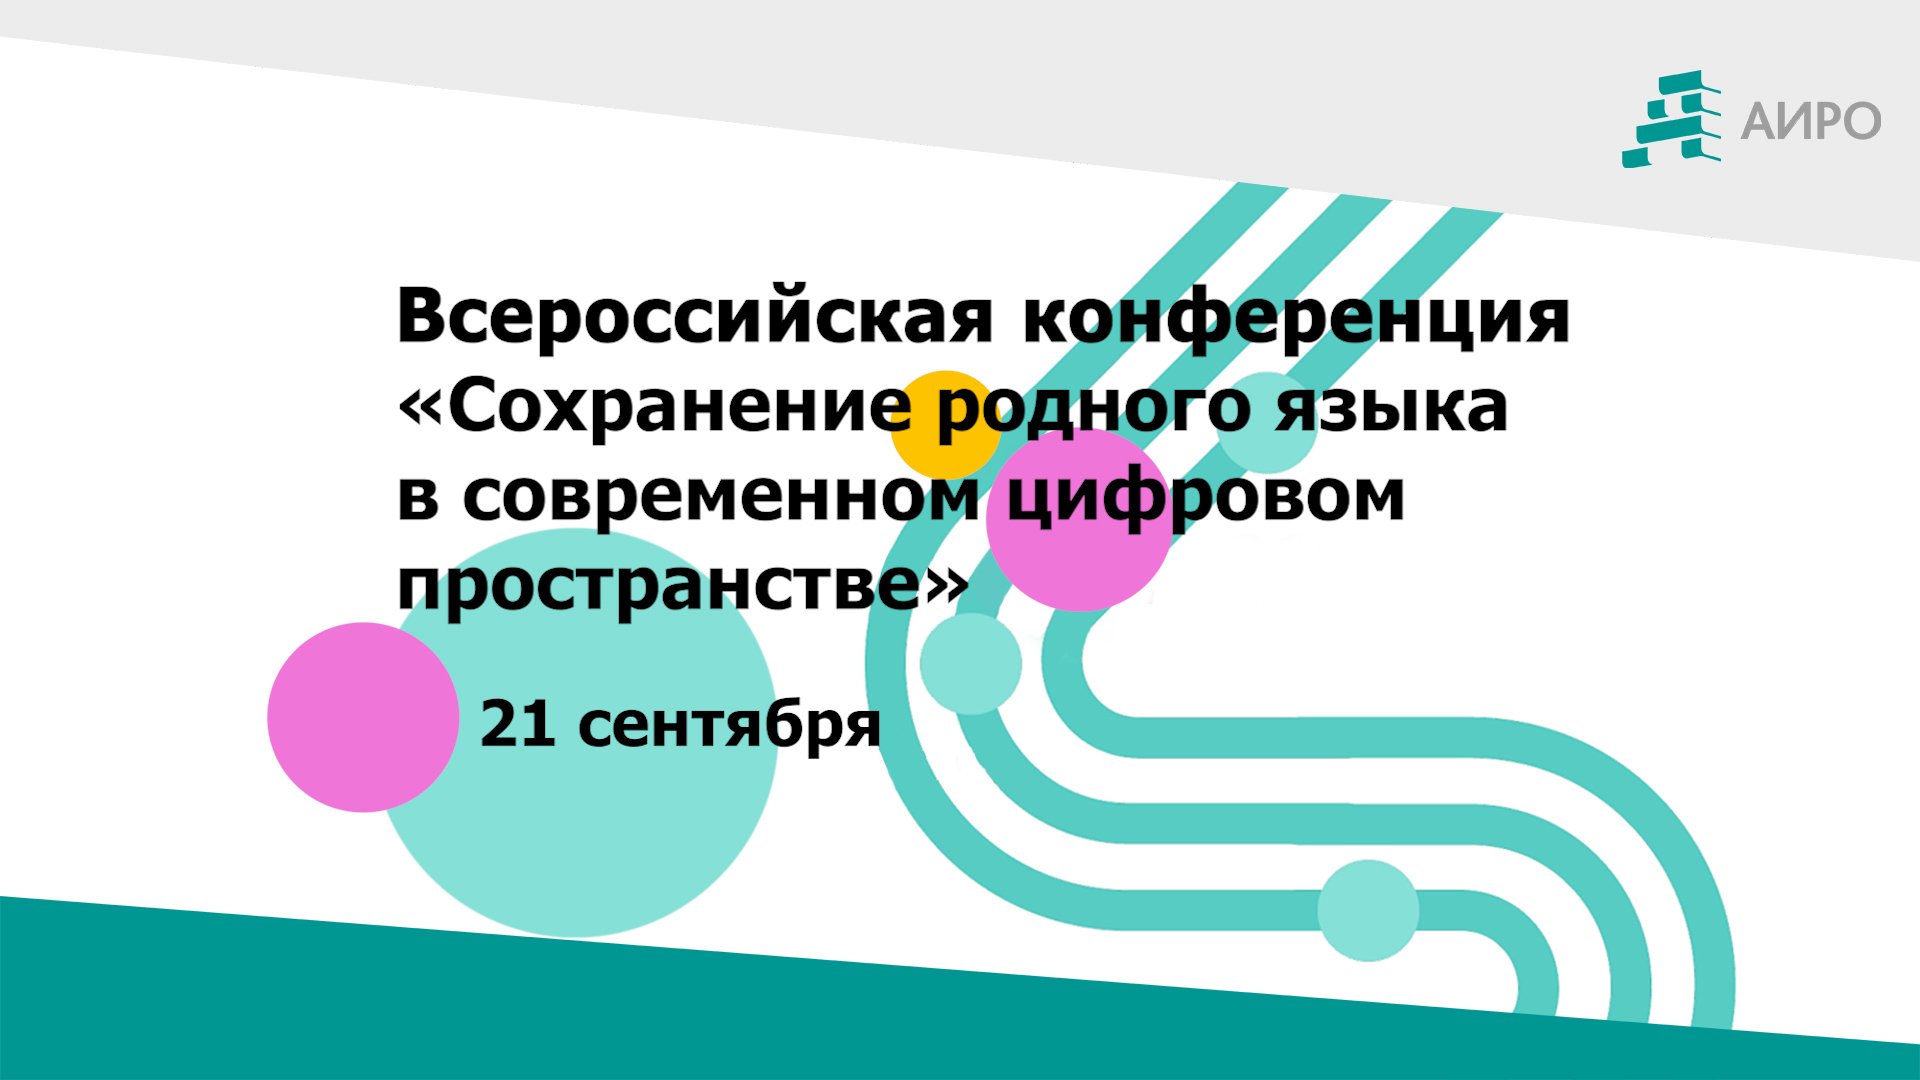 Всероссийская конференция «Сохранение родного языка в современном цифровом пространстве»